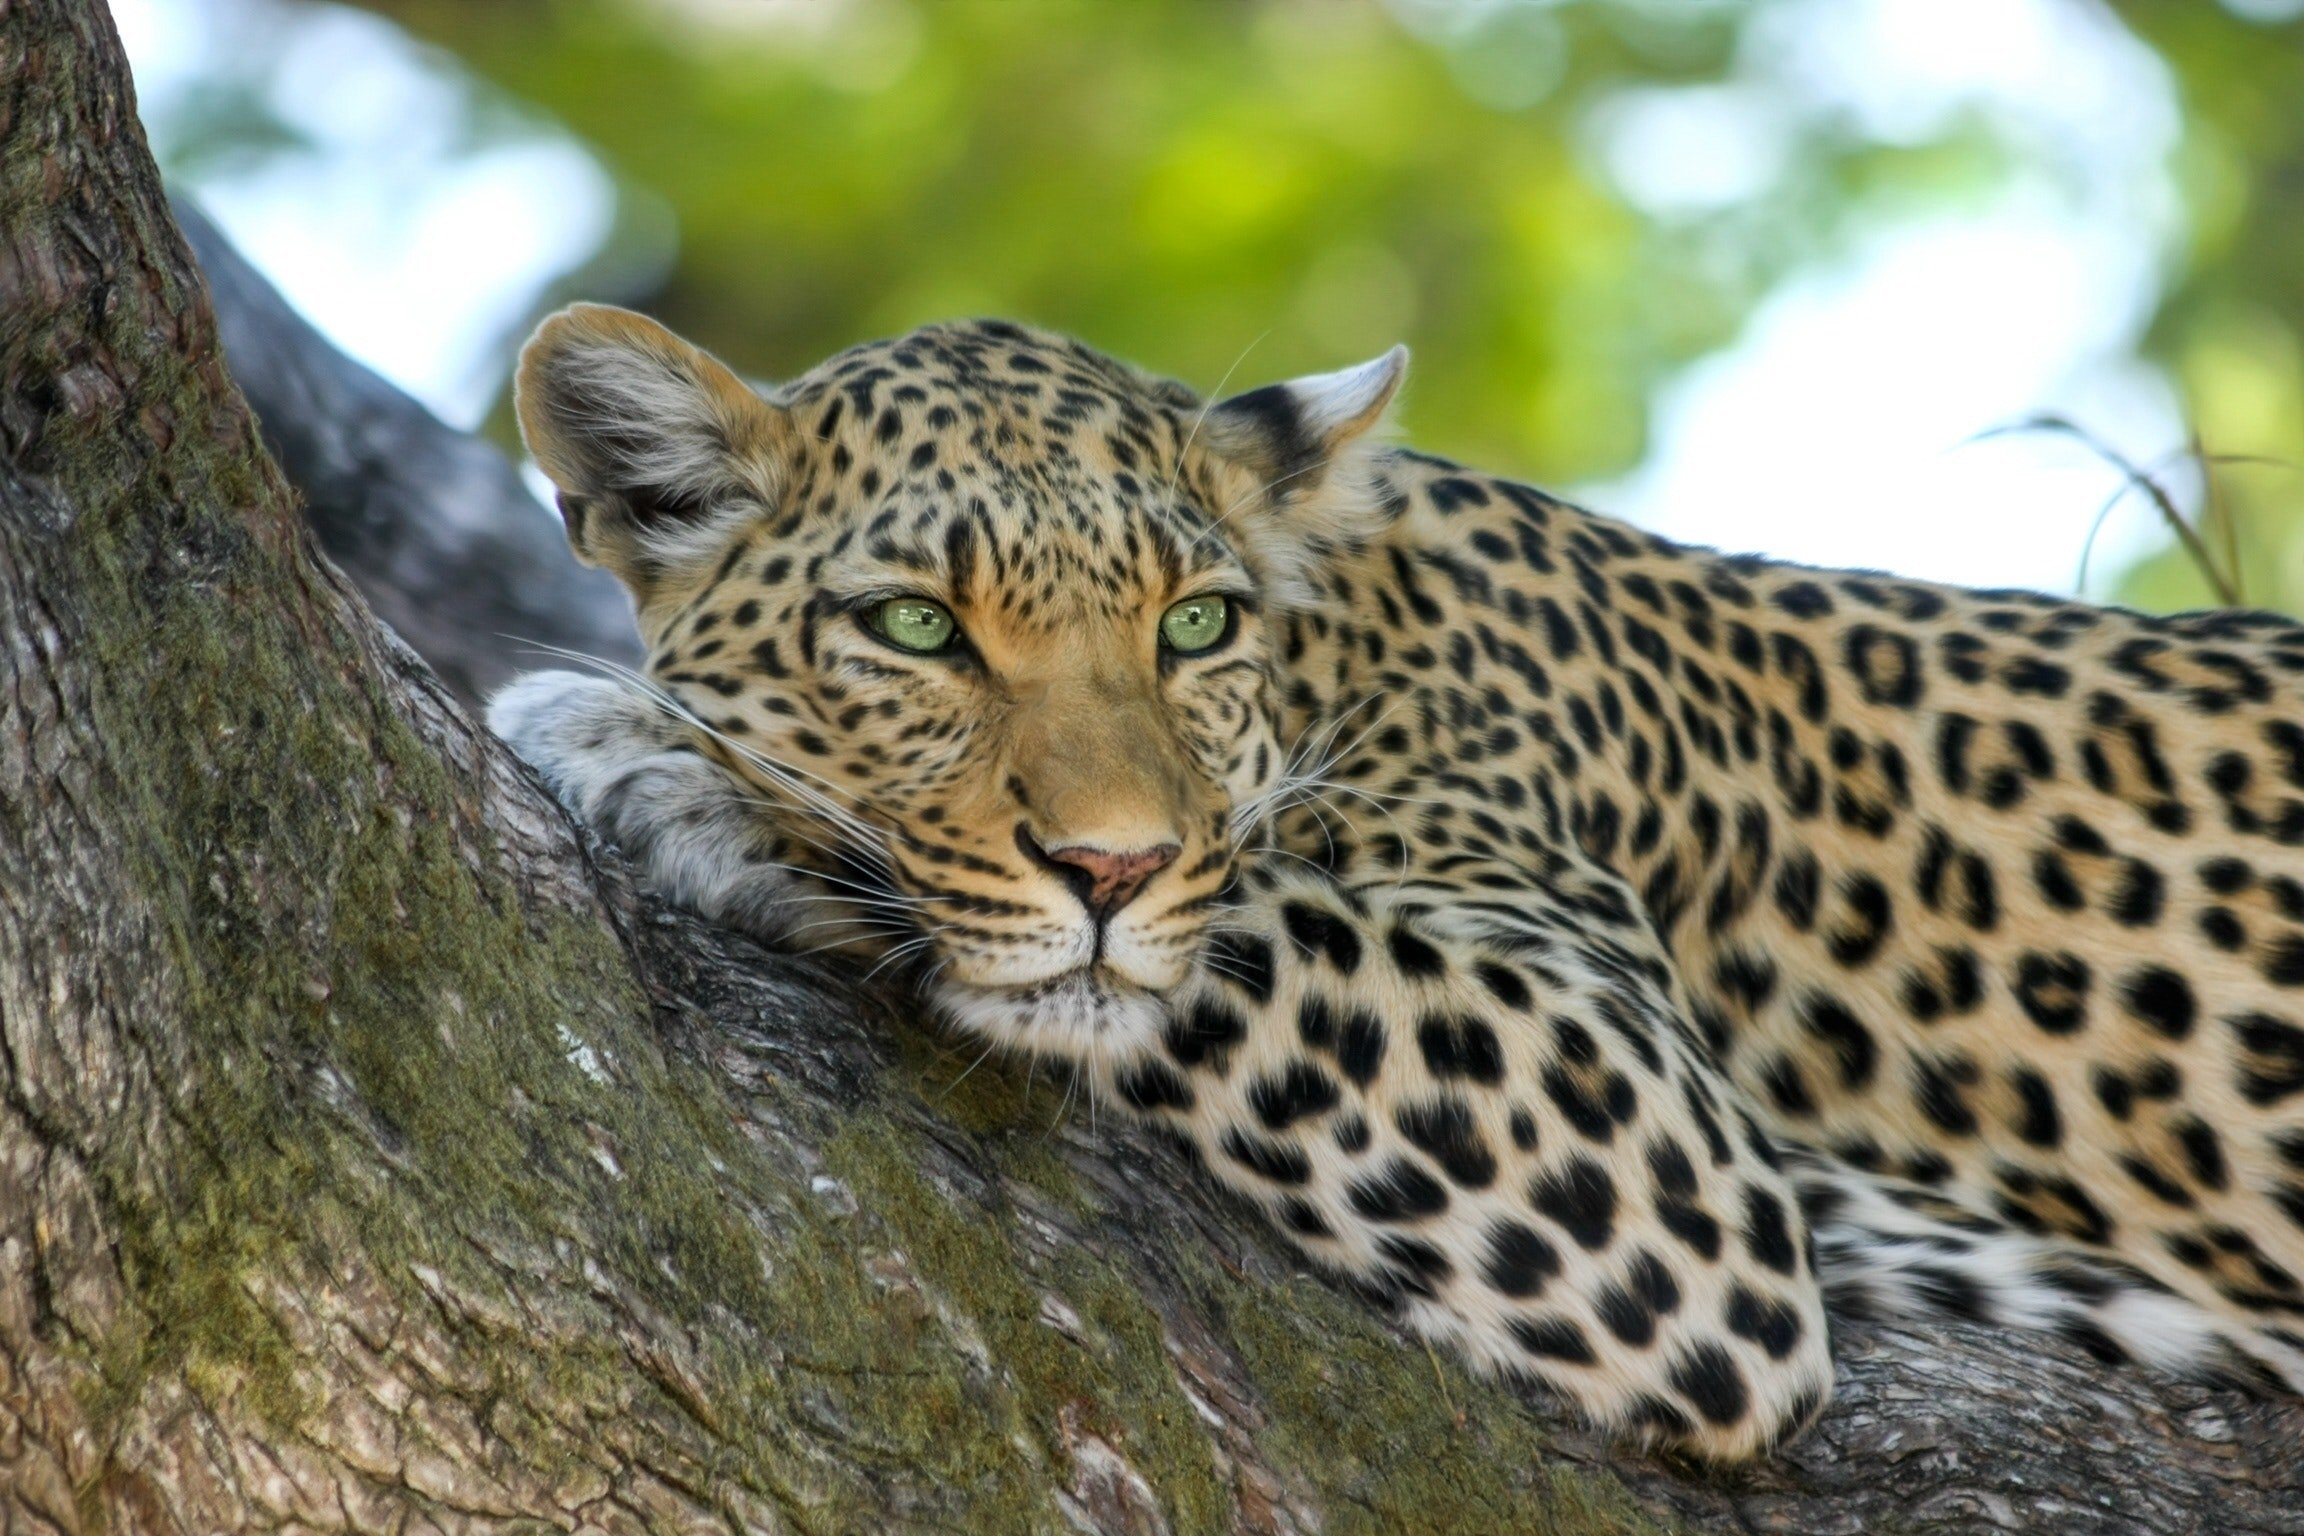 Спасены: количество дальневосточных леопардов за девять лет увеличилось втрое